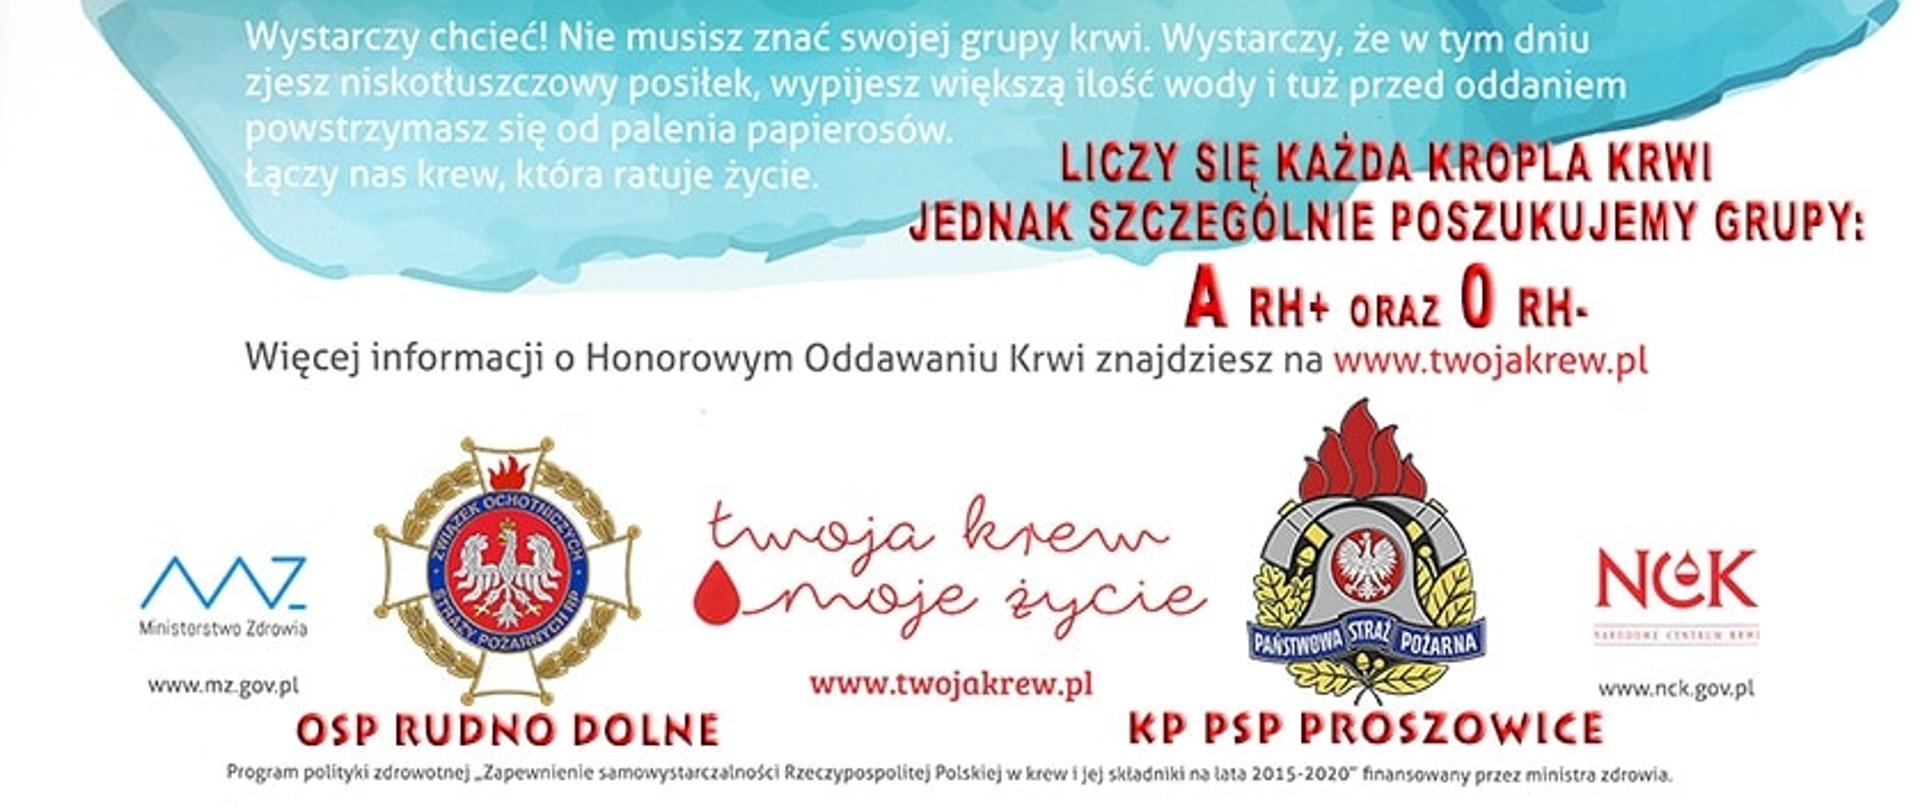 Plakat Zbiórka krwi OSP Rudno Dolne